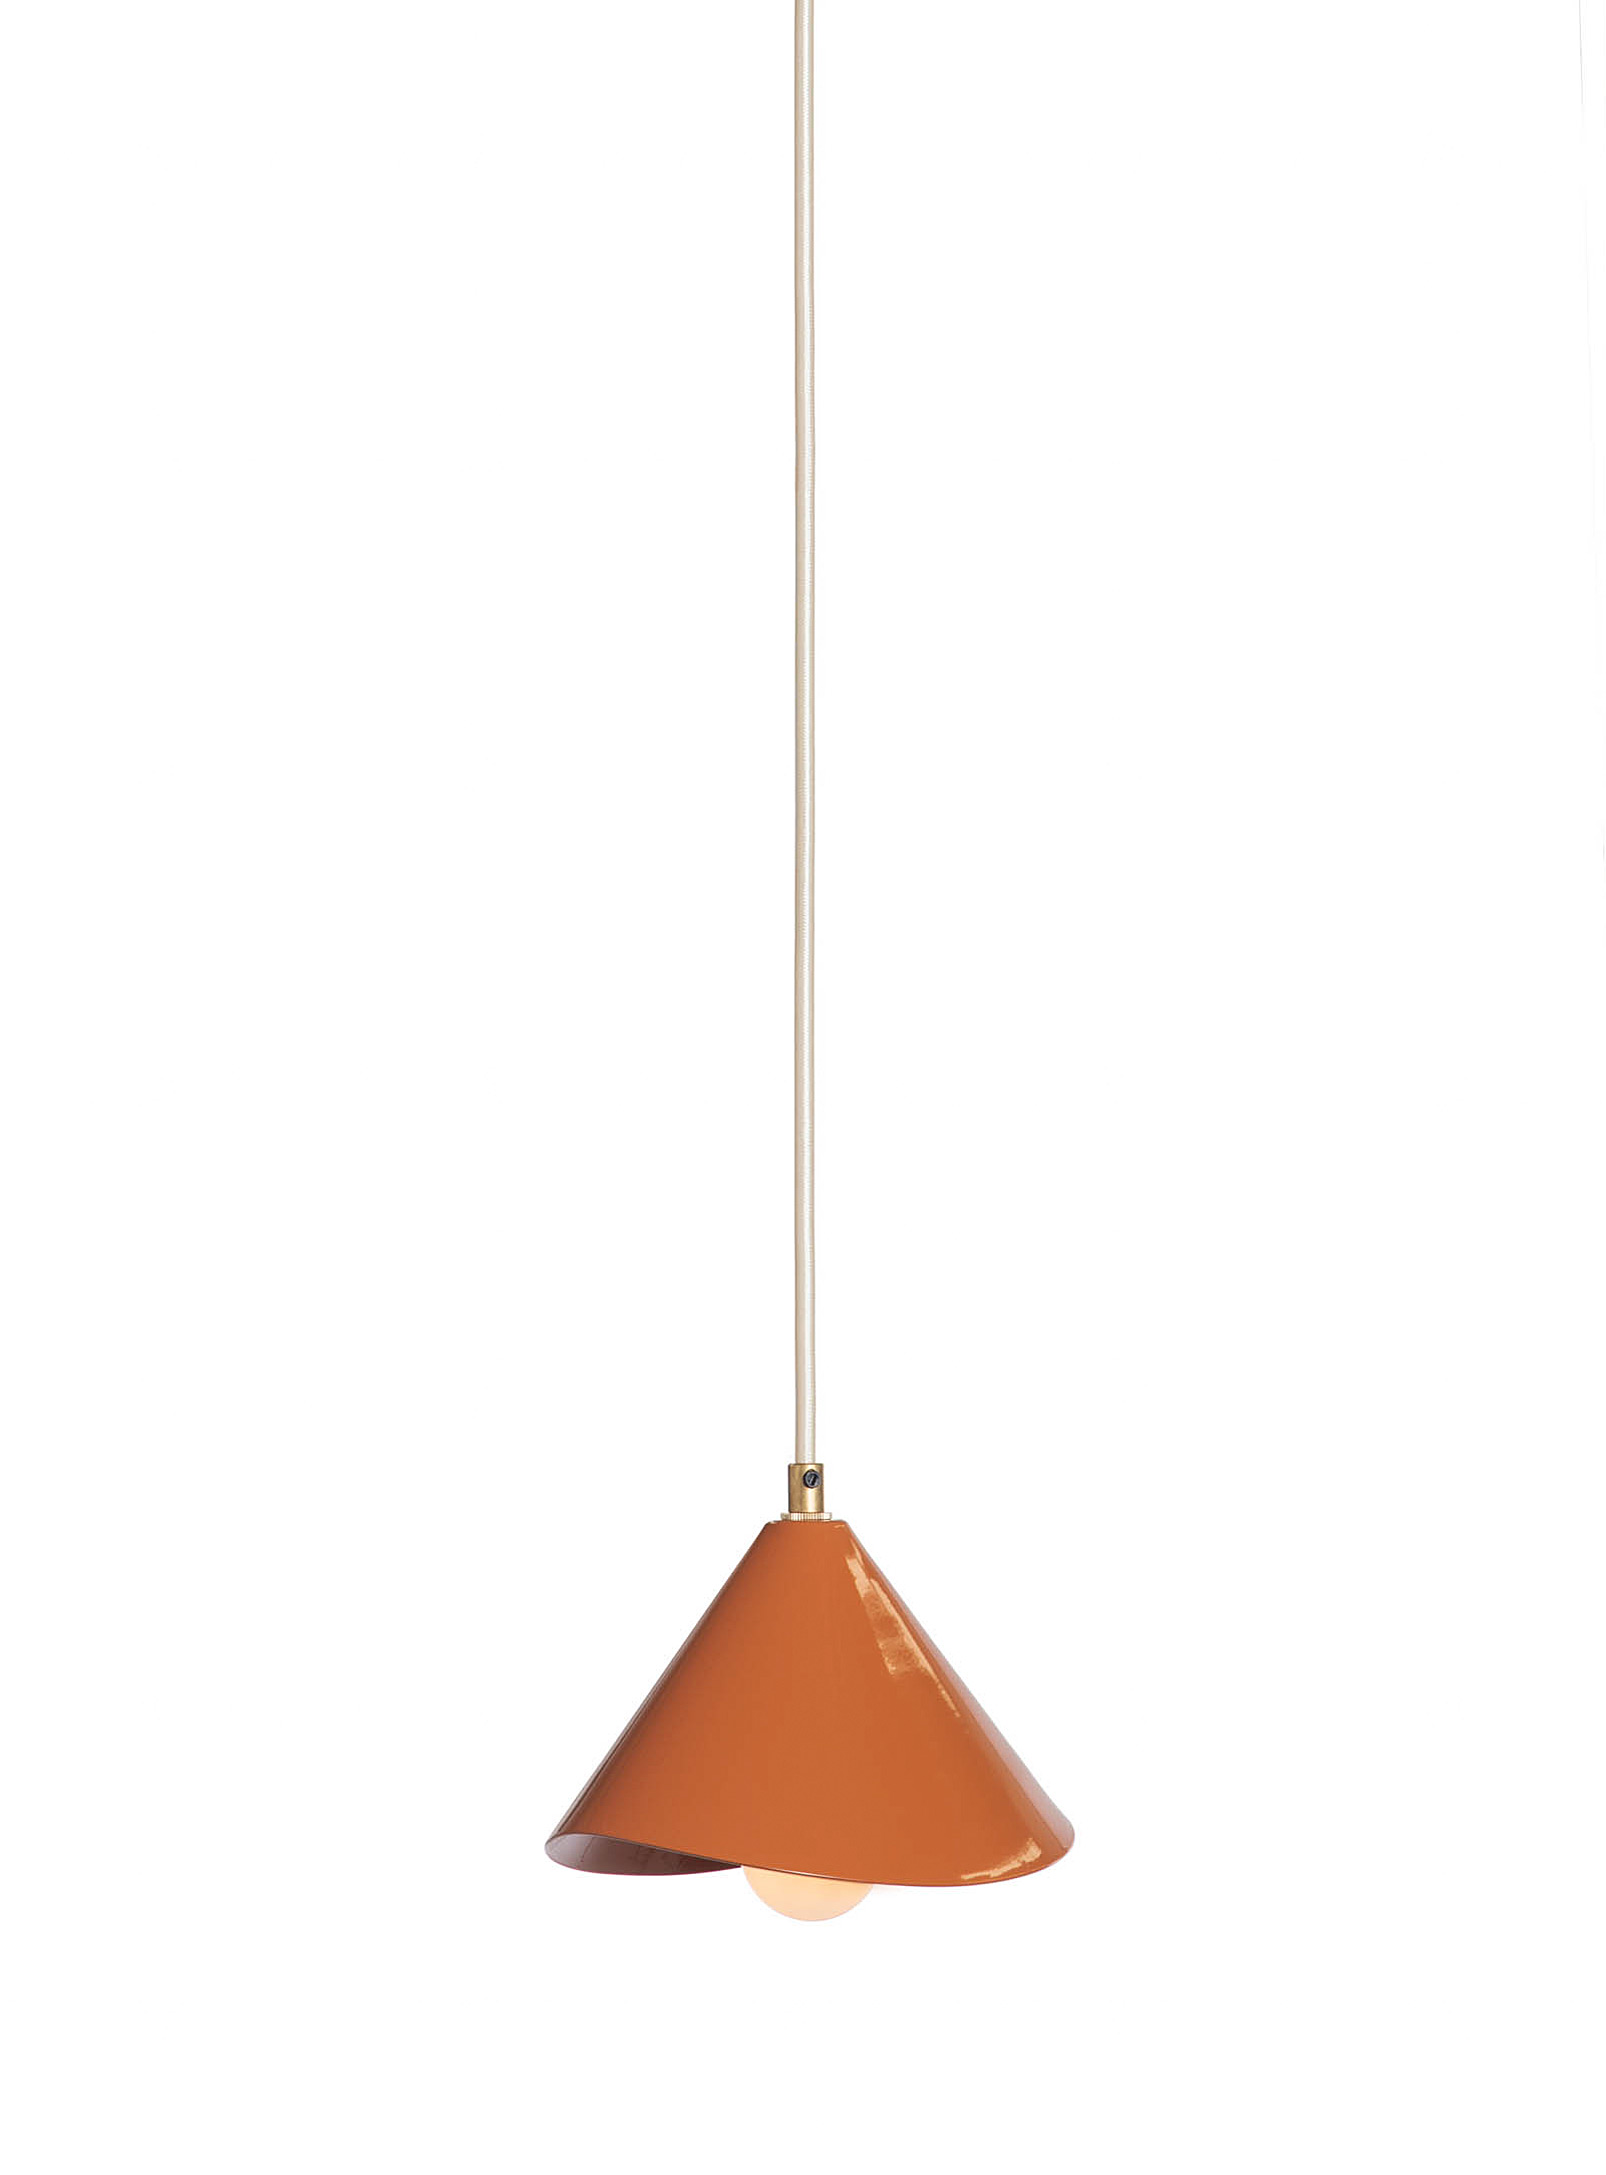 Luminaire Authentik Lotus Hanging Lamp In Medium Orange